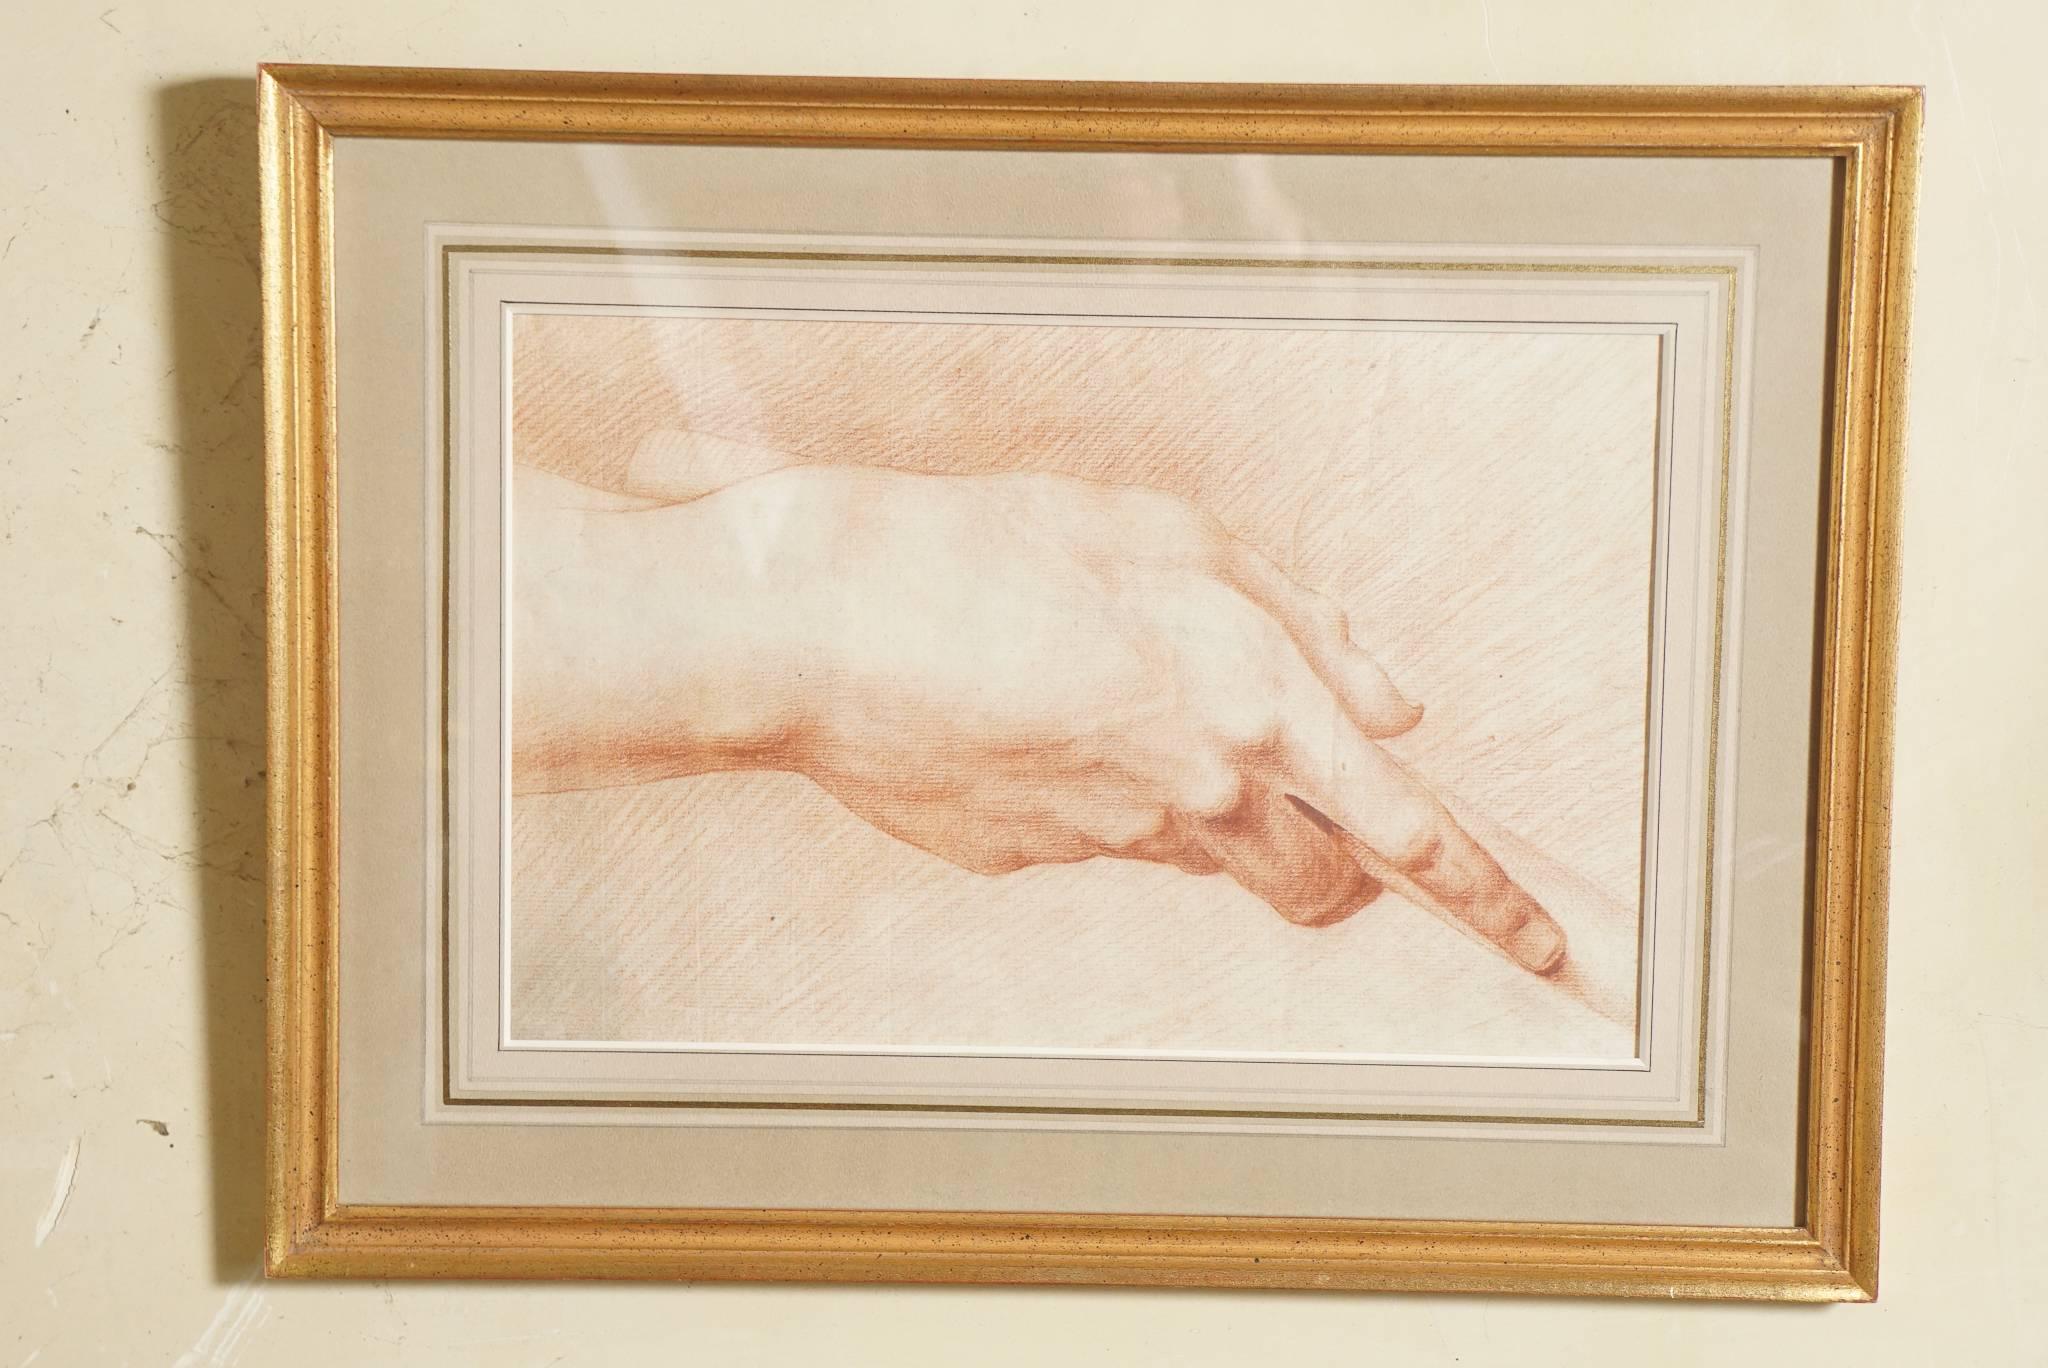 Diese sehr schöne Zeichnung in Sanguine stammt aus dem frühen 19. Jahrhundert. Es handelt sich um eine vorbereitende Skizze zu Komposition, Muskulatur und Schatten. Das Werk ist unsigniert, aber wir haben vier Zeichnungen von derselben Hand, die aus